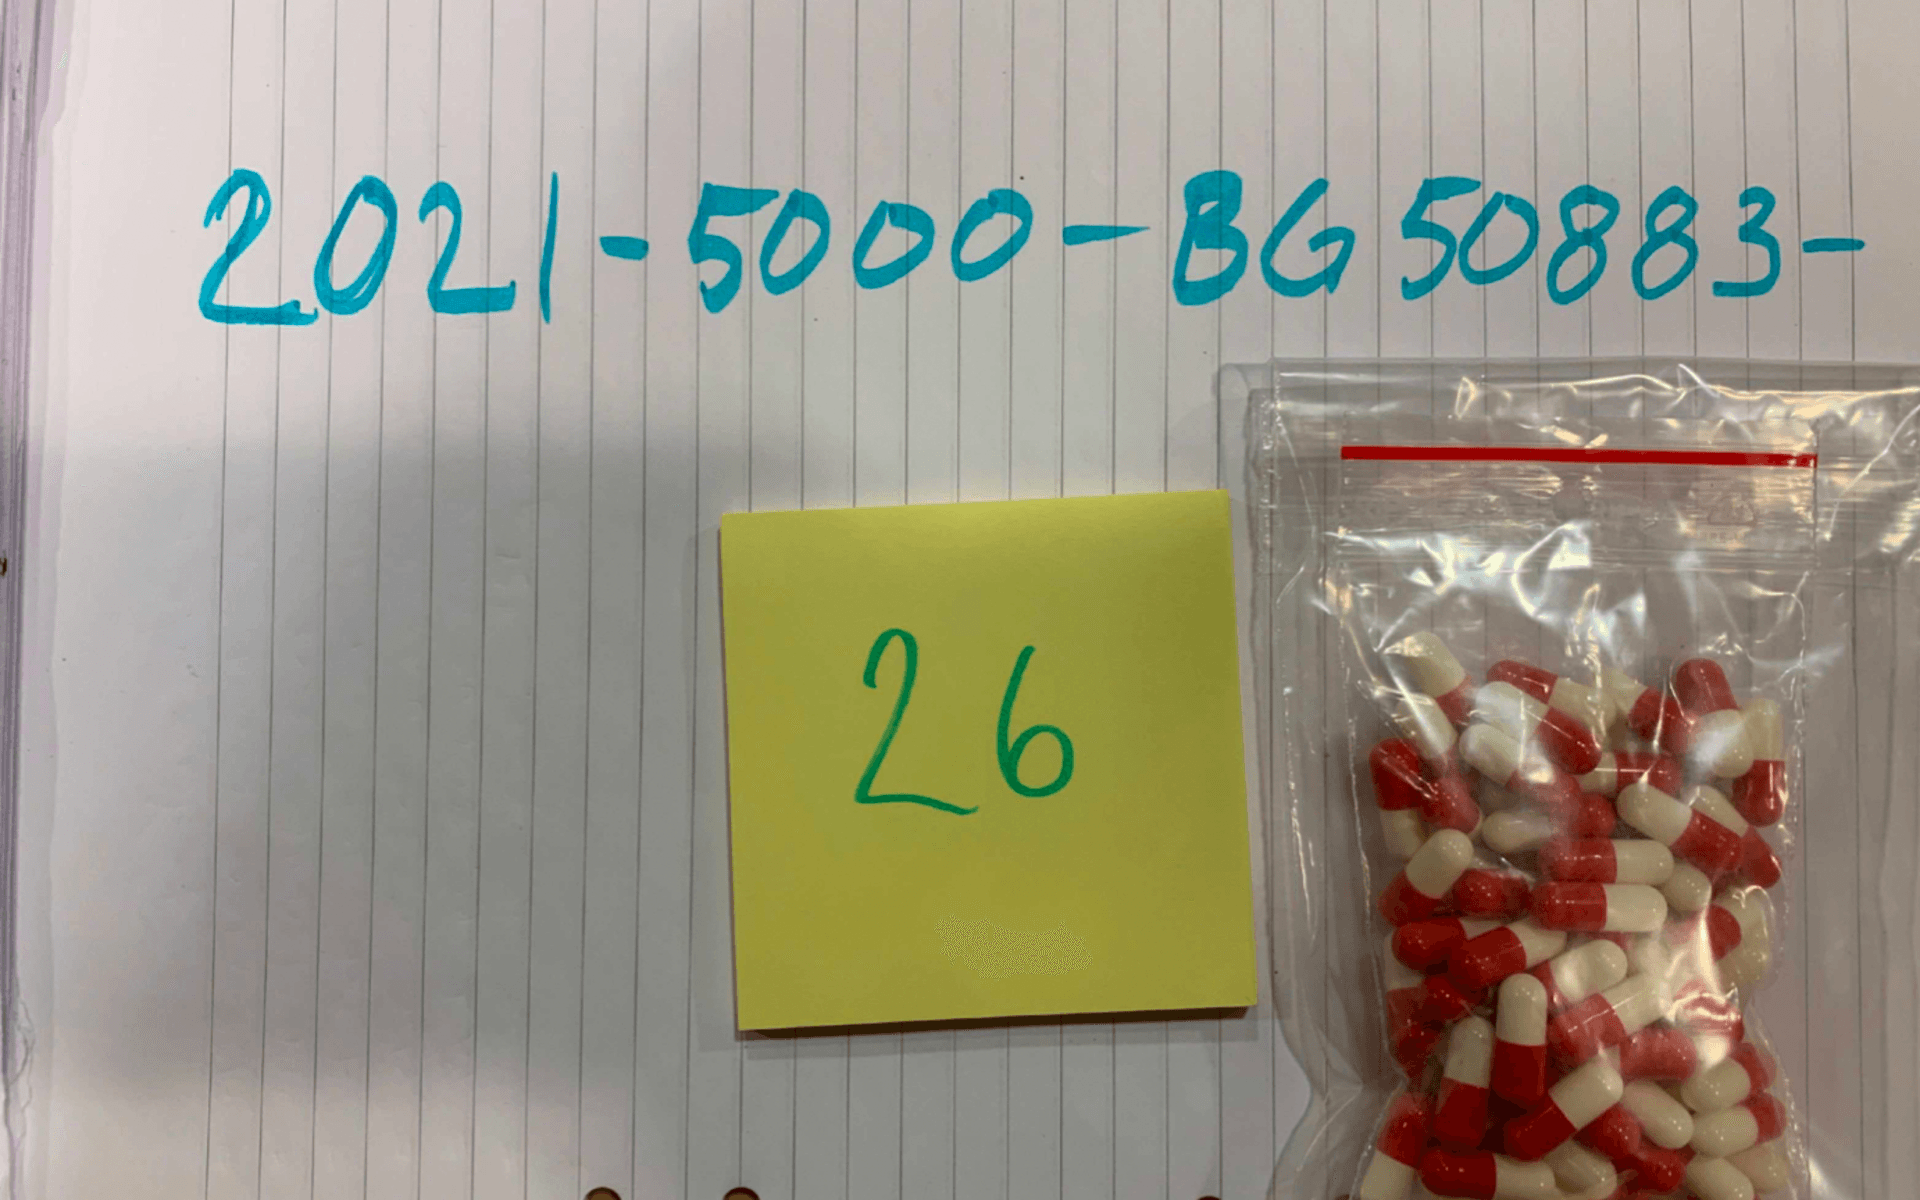 En av de många tablettpåsarna som hittades vid husrannsakan.